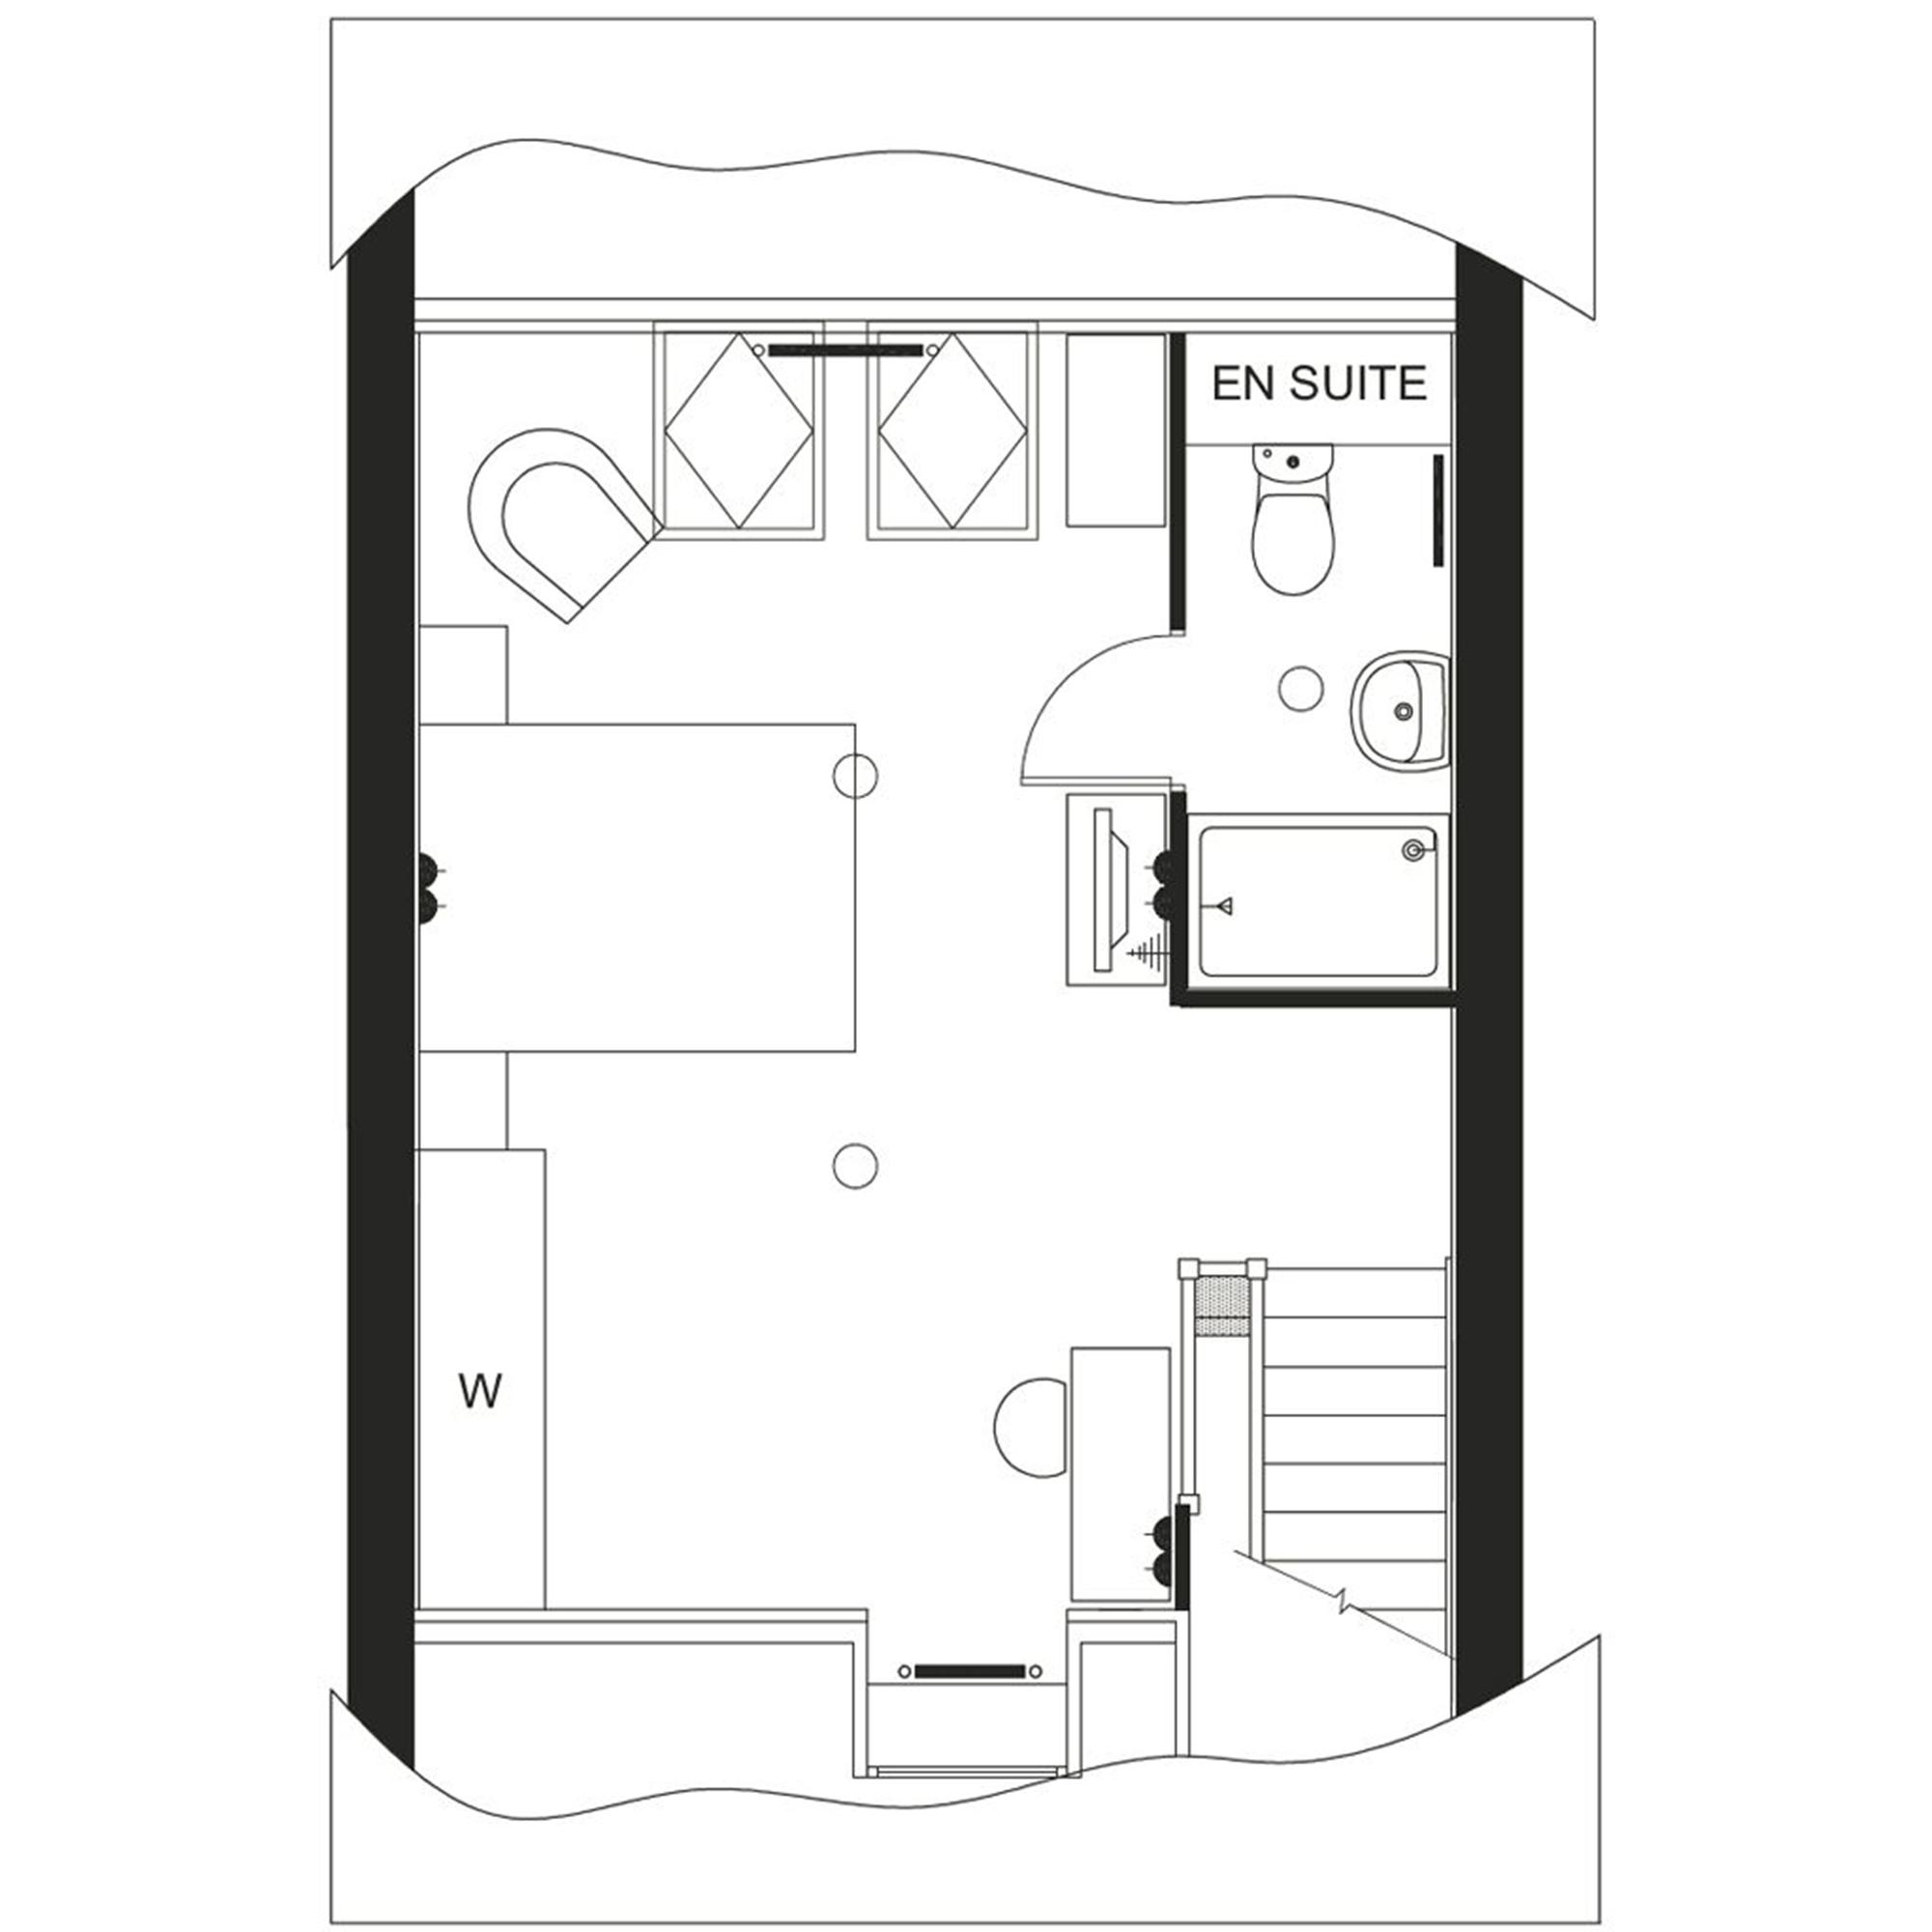 David Wilson Homes Holden Floor Plan